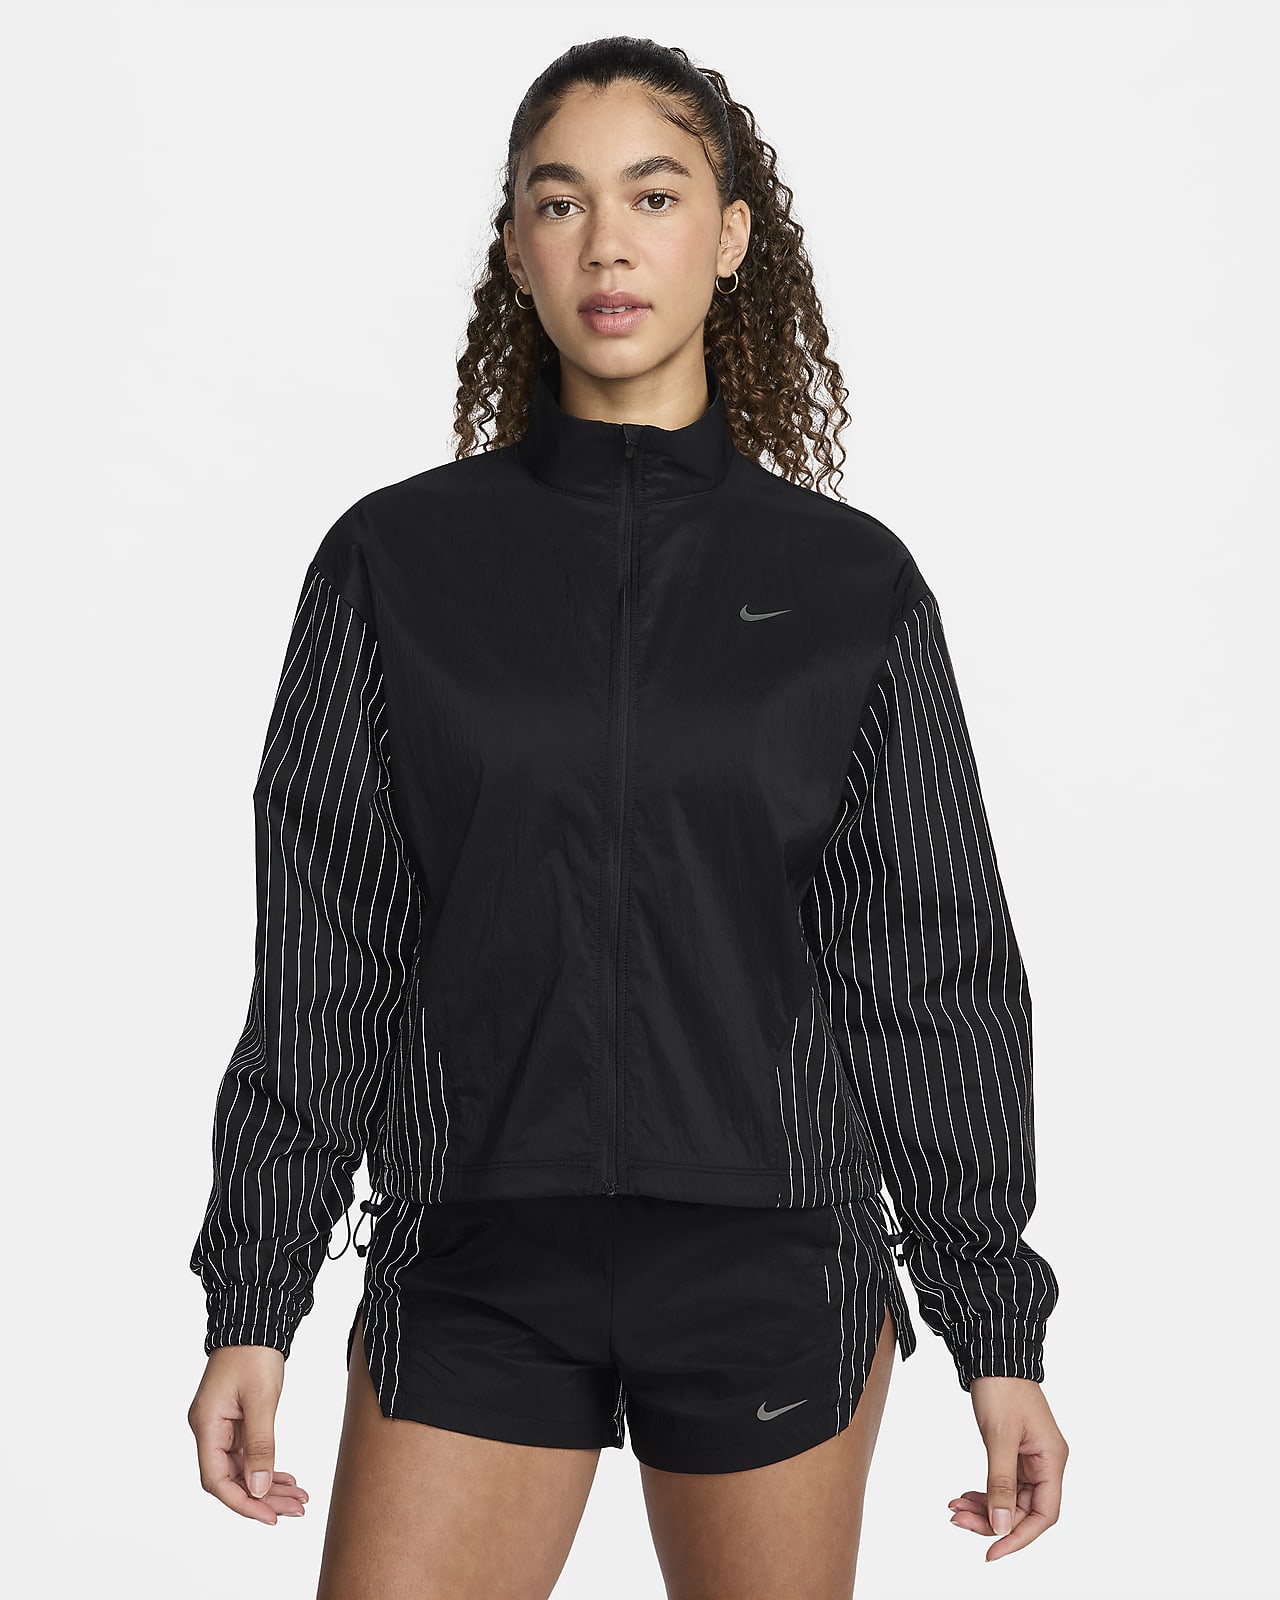 Löparjacka Nike Run Division för kvinnor